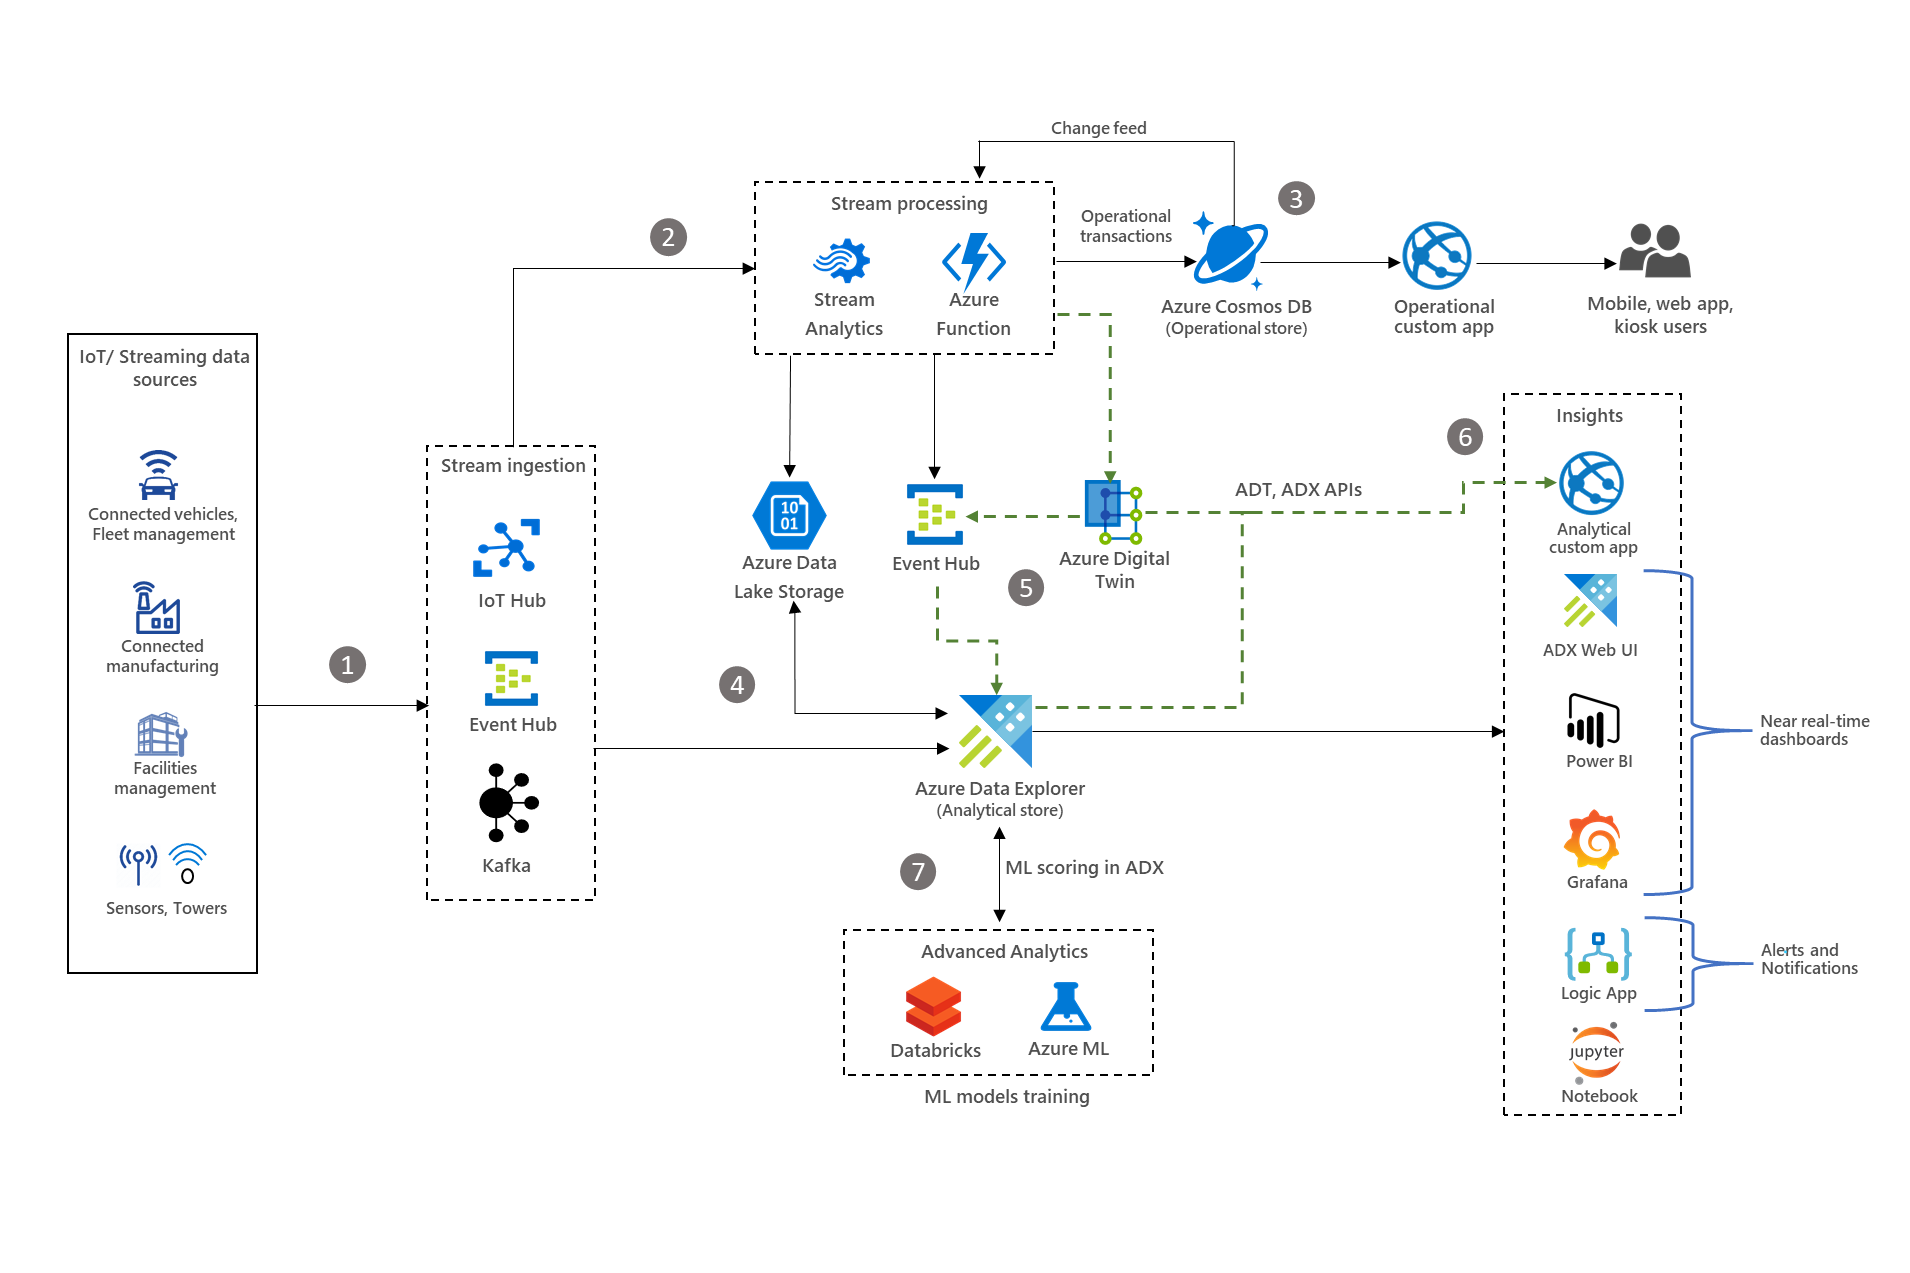 Anteprima dell'analisi IoT con Diagramma architetturale di Azure Esplora dati.